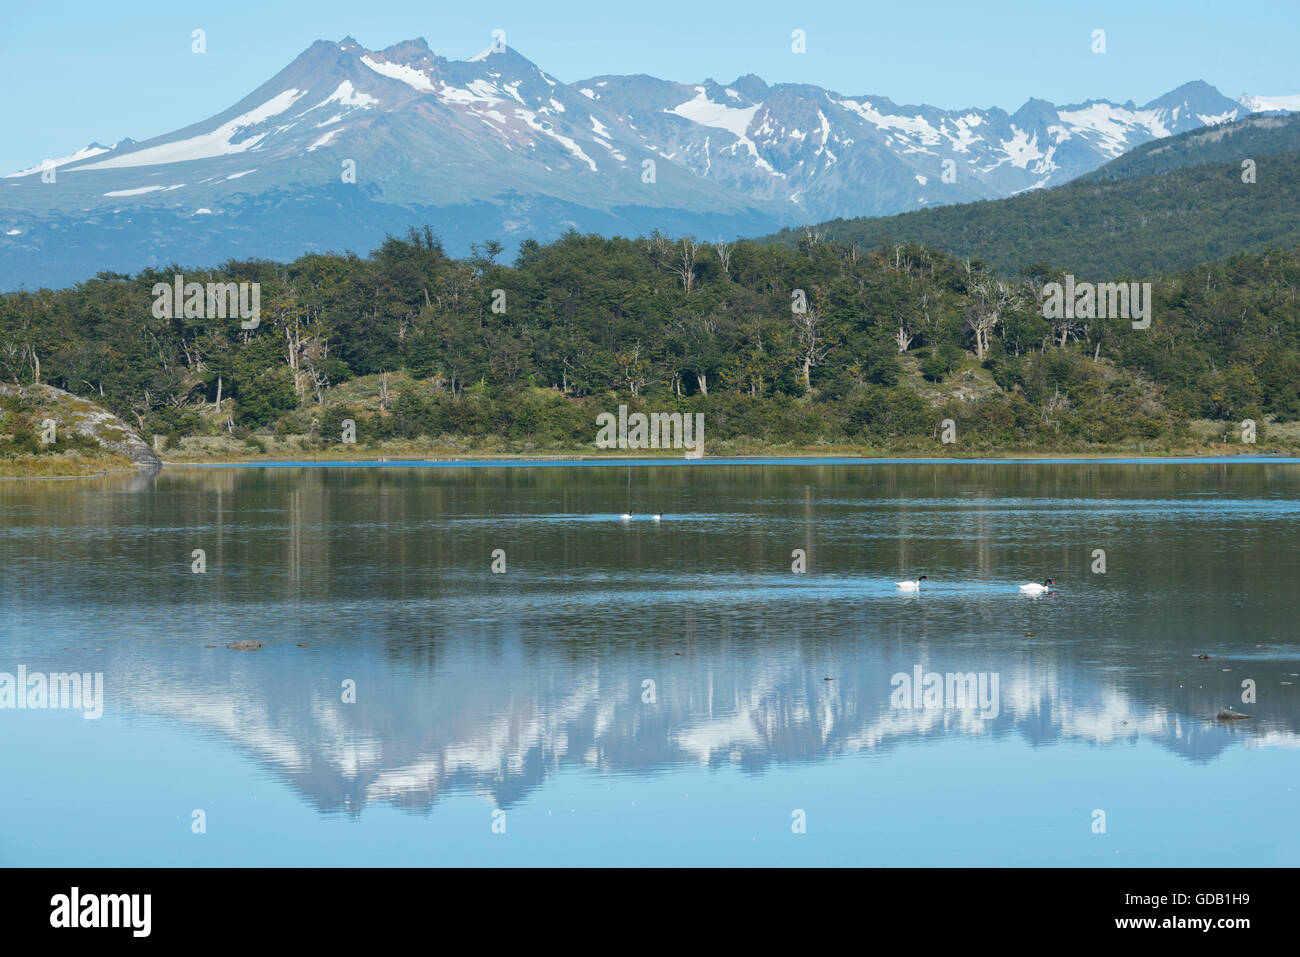 South America,Tierra del Fuego,Argentina,Ushuaia,Tierra del Fuego,National Park Stock Photo